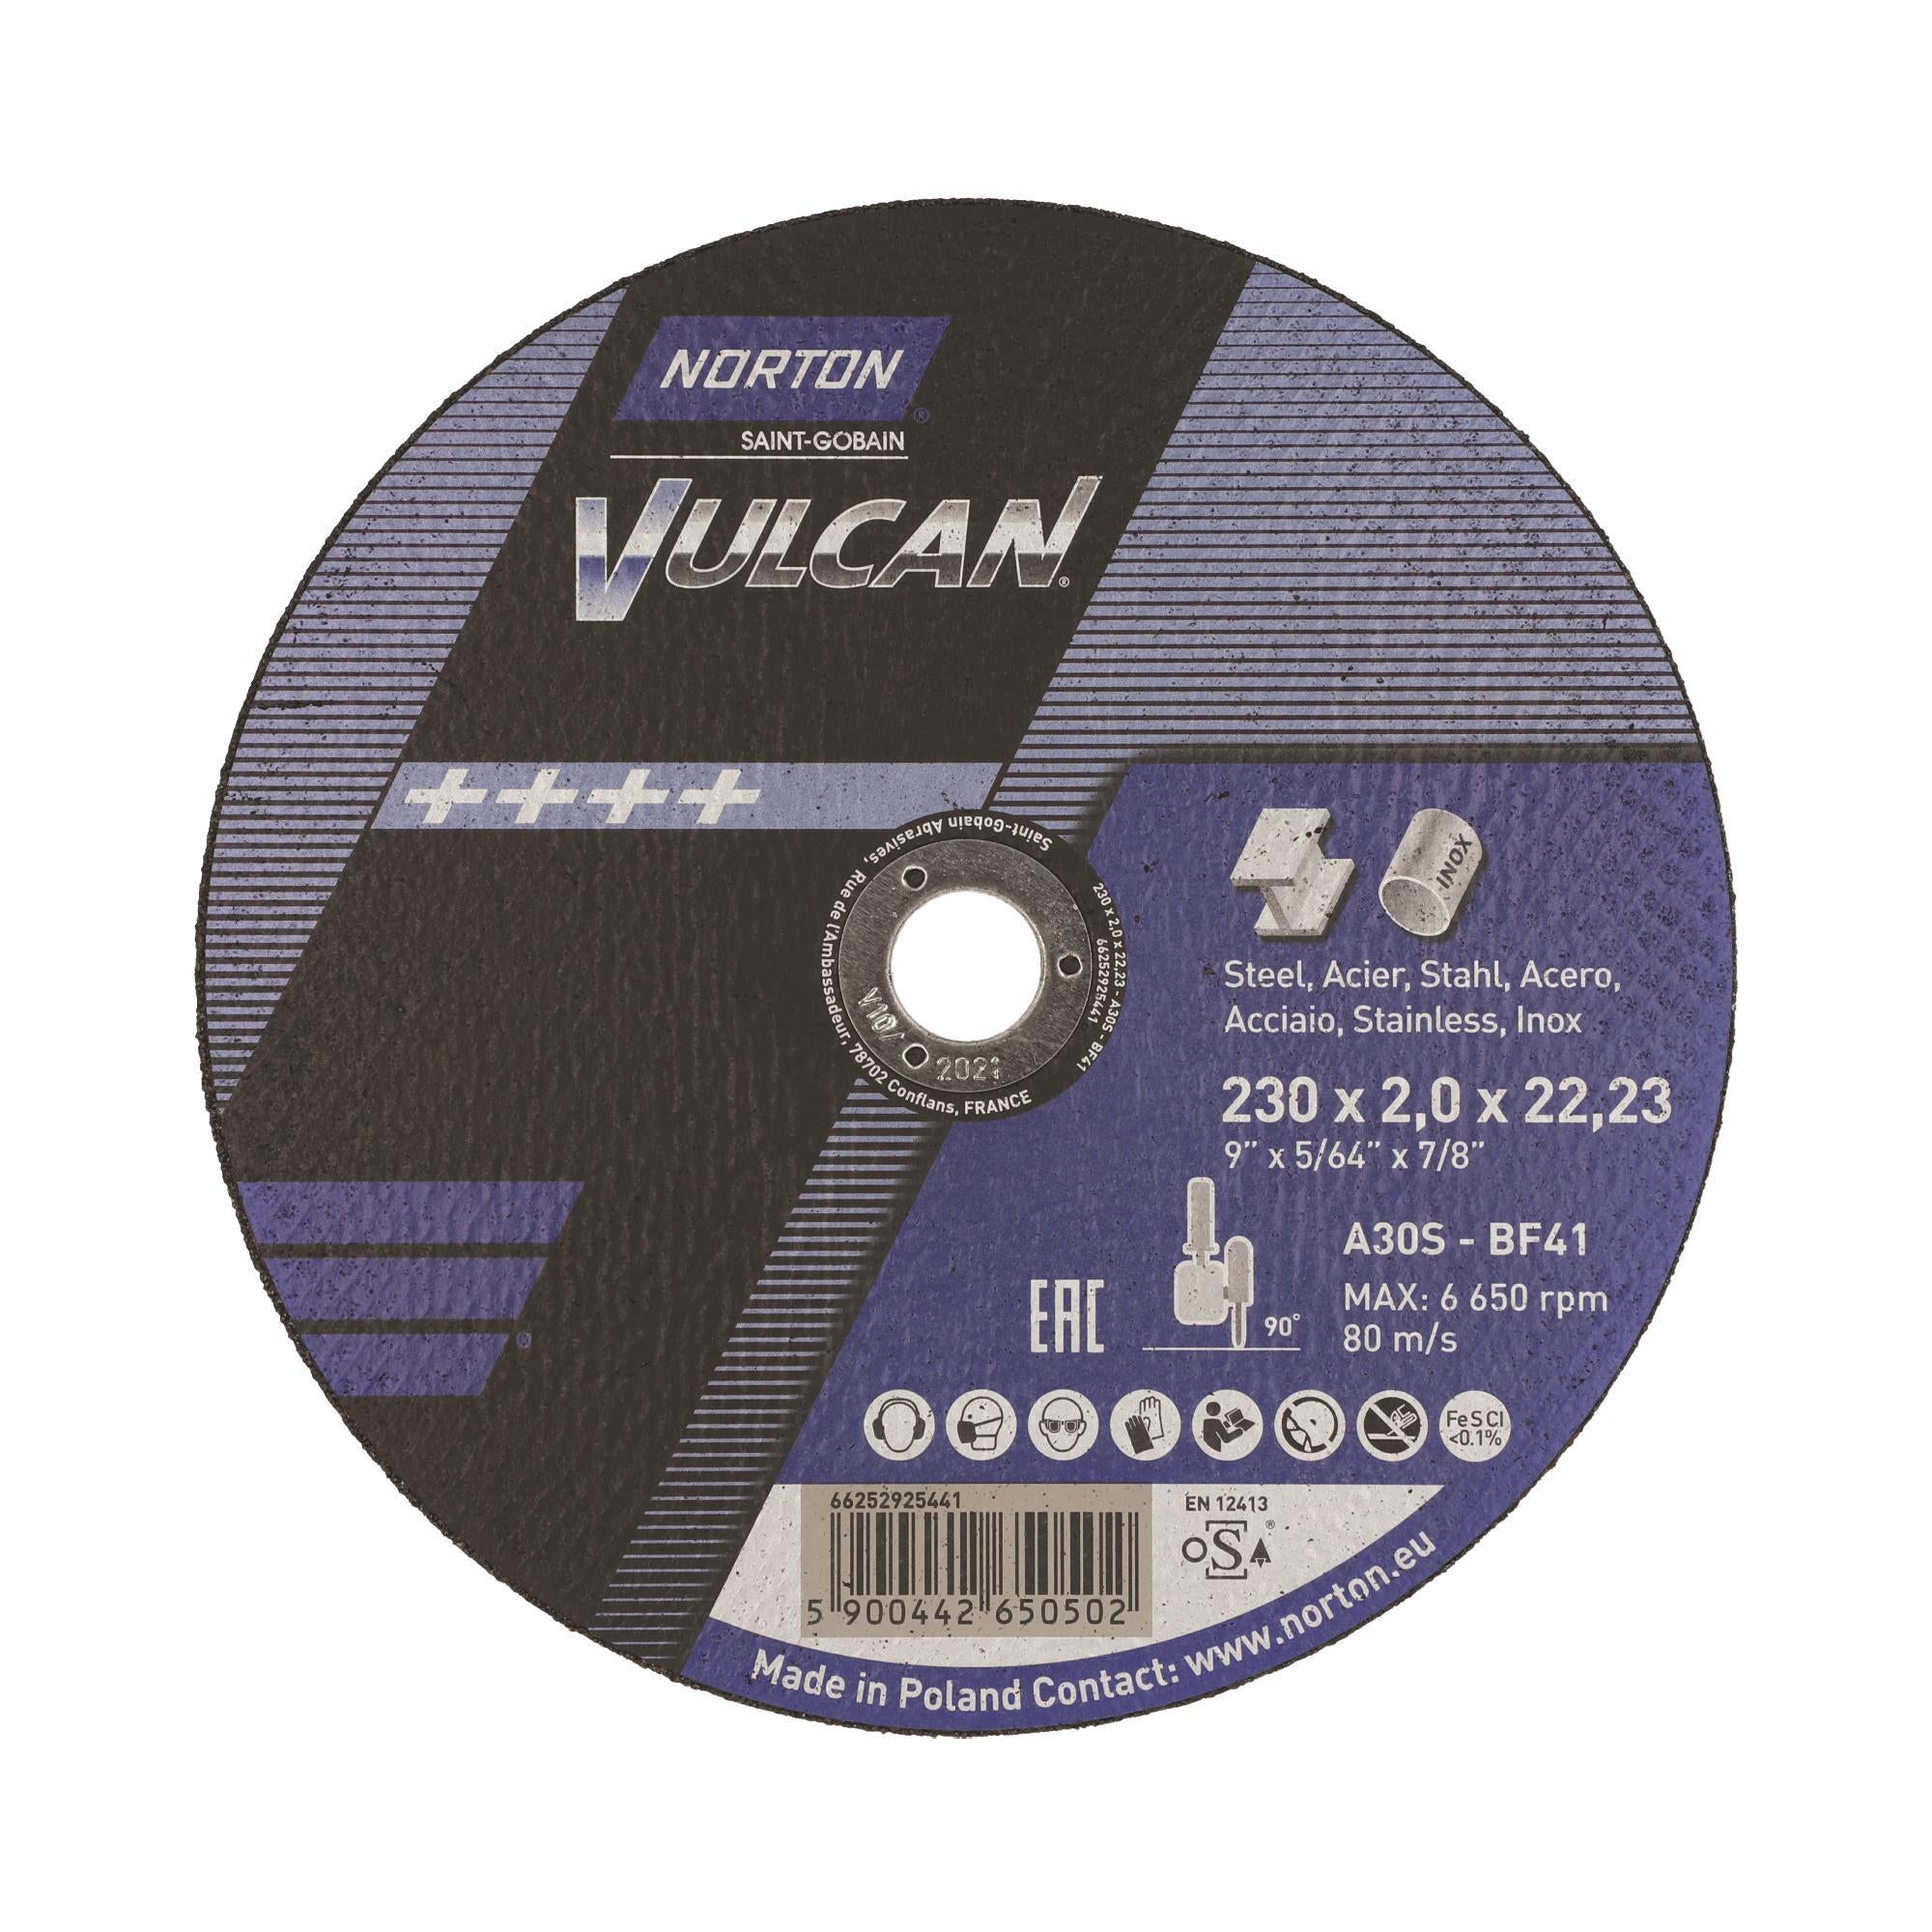 Δίσκος κοπής για inox-σιδηρου  25τεμ. Ίσιος VULCAN No230x2x22,23mm 66252925441